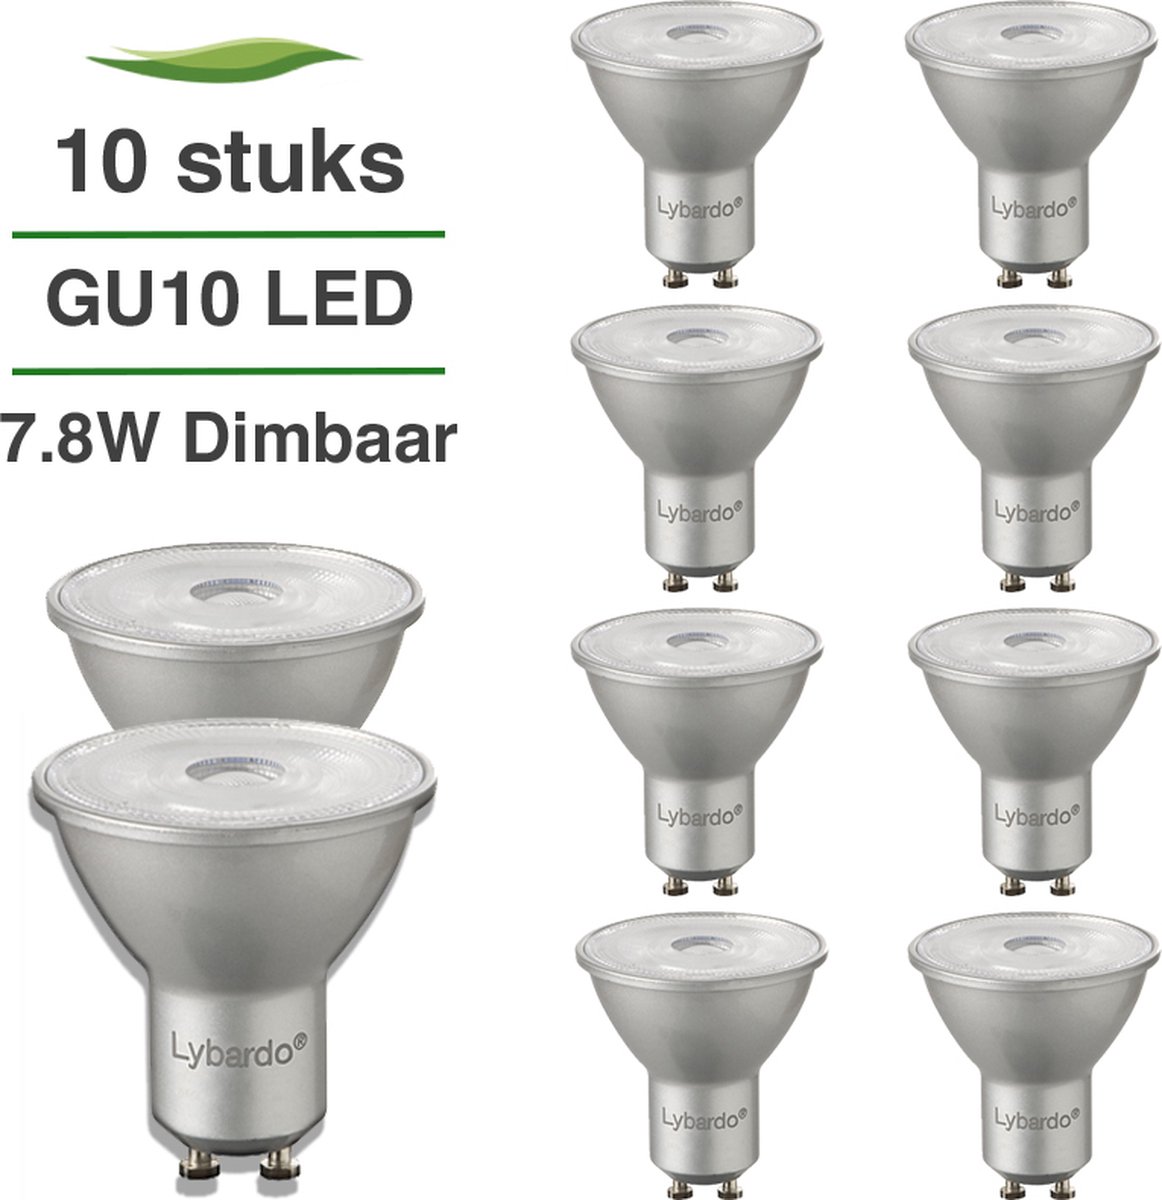 Ampoule LED GU10 dimmable 5W, 2700K - 36° - LumenXL